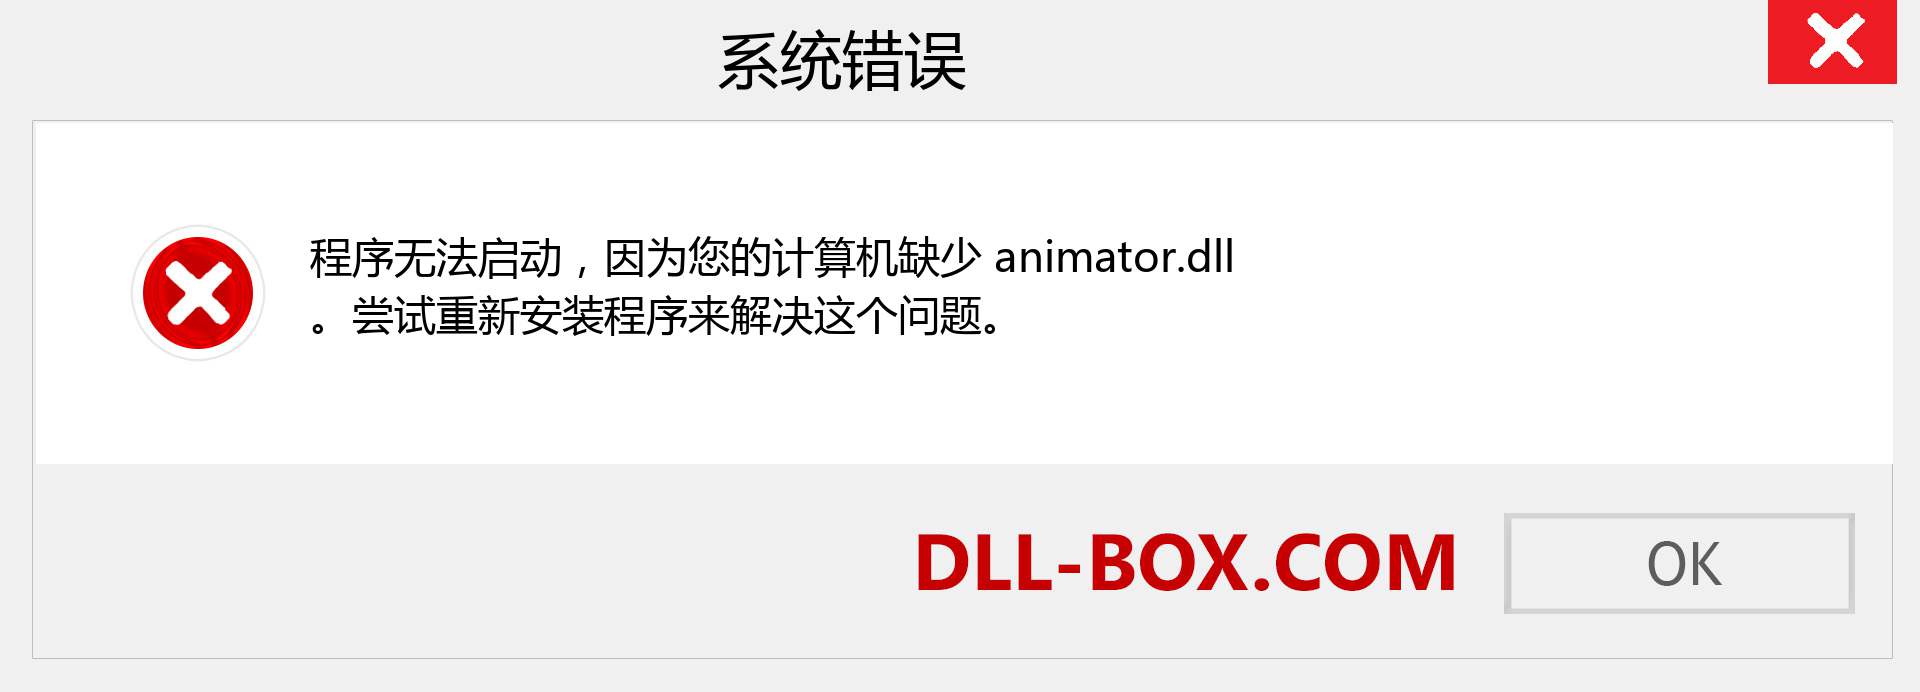 animator.dll 文件丢失？。 适用于 Windows 7、8、10 的下载 - 修复 Windows、照片、图像上的 animator dll 丢失错误